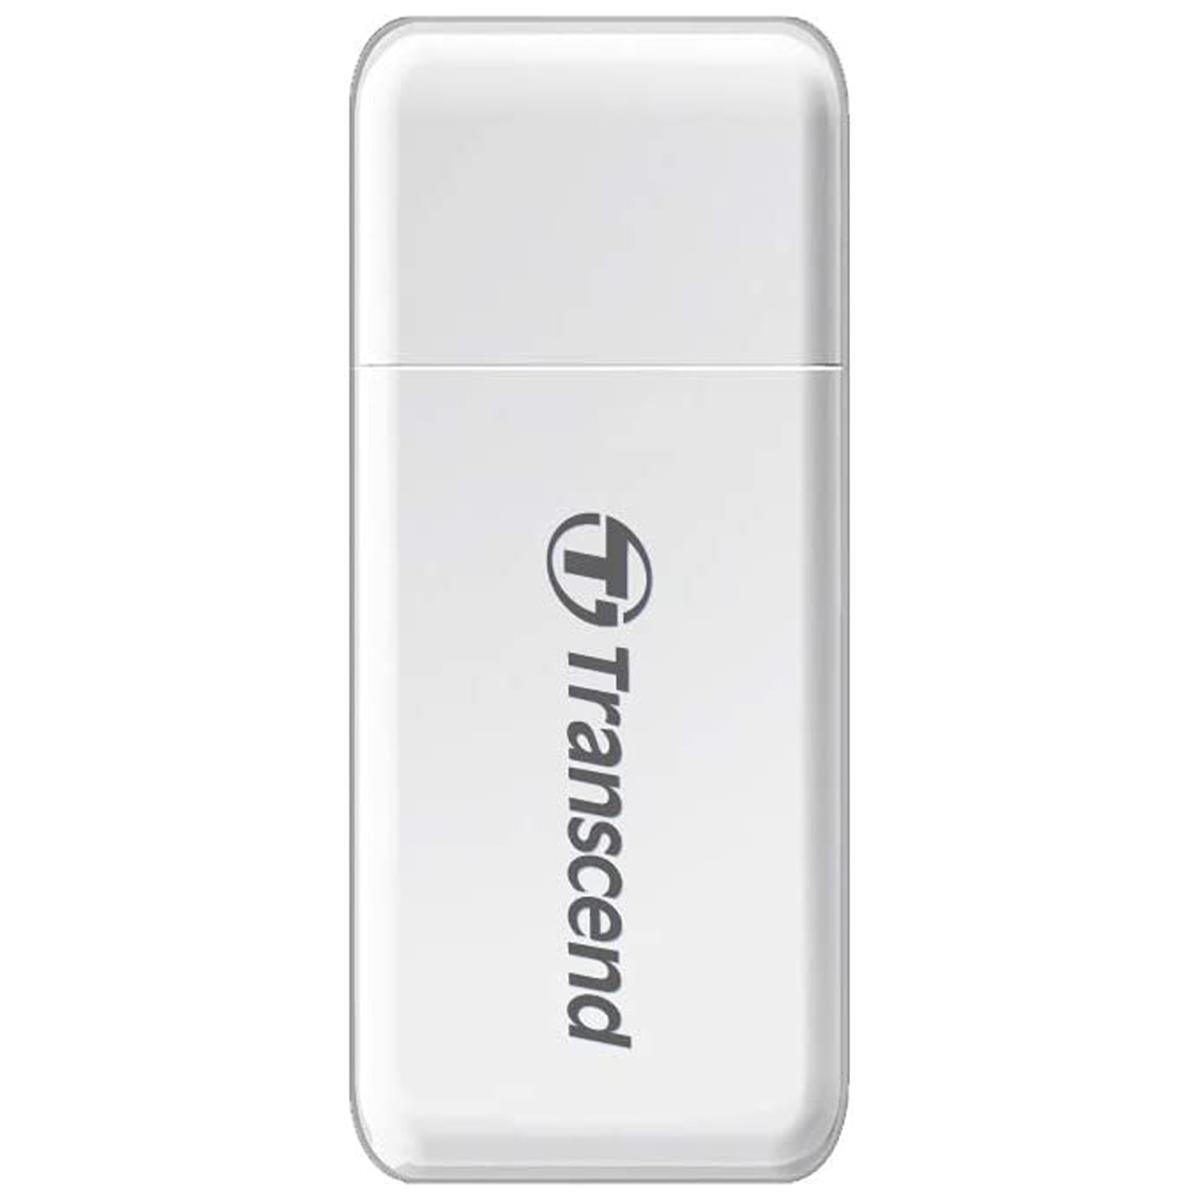 Image of Transcend USB 3.0 Card Reader